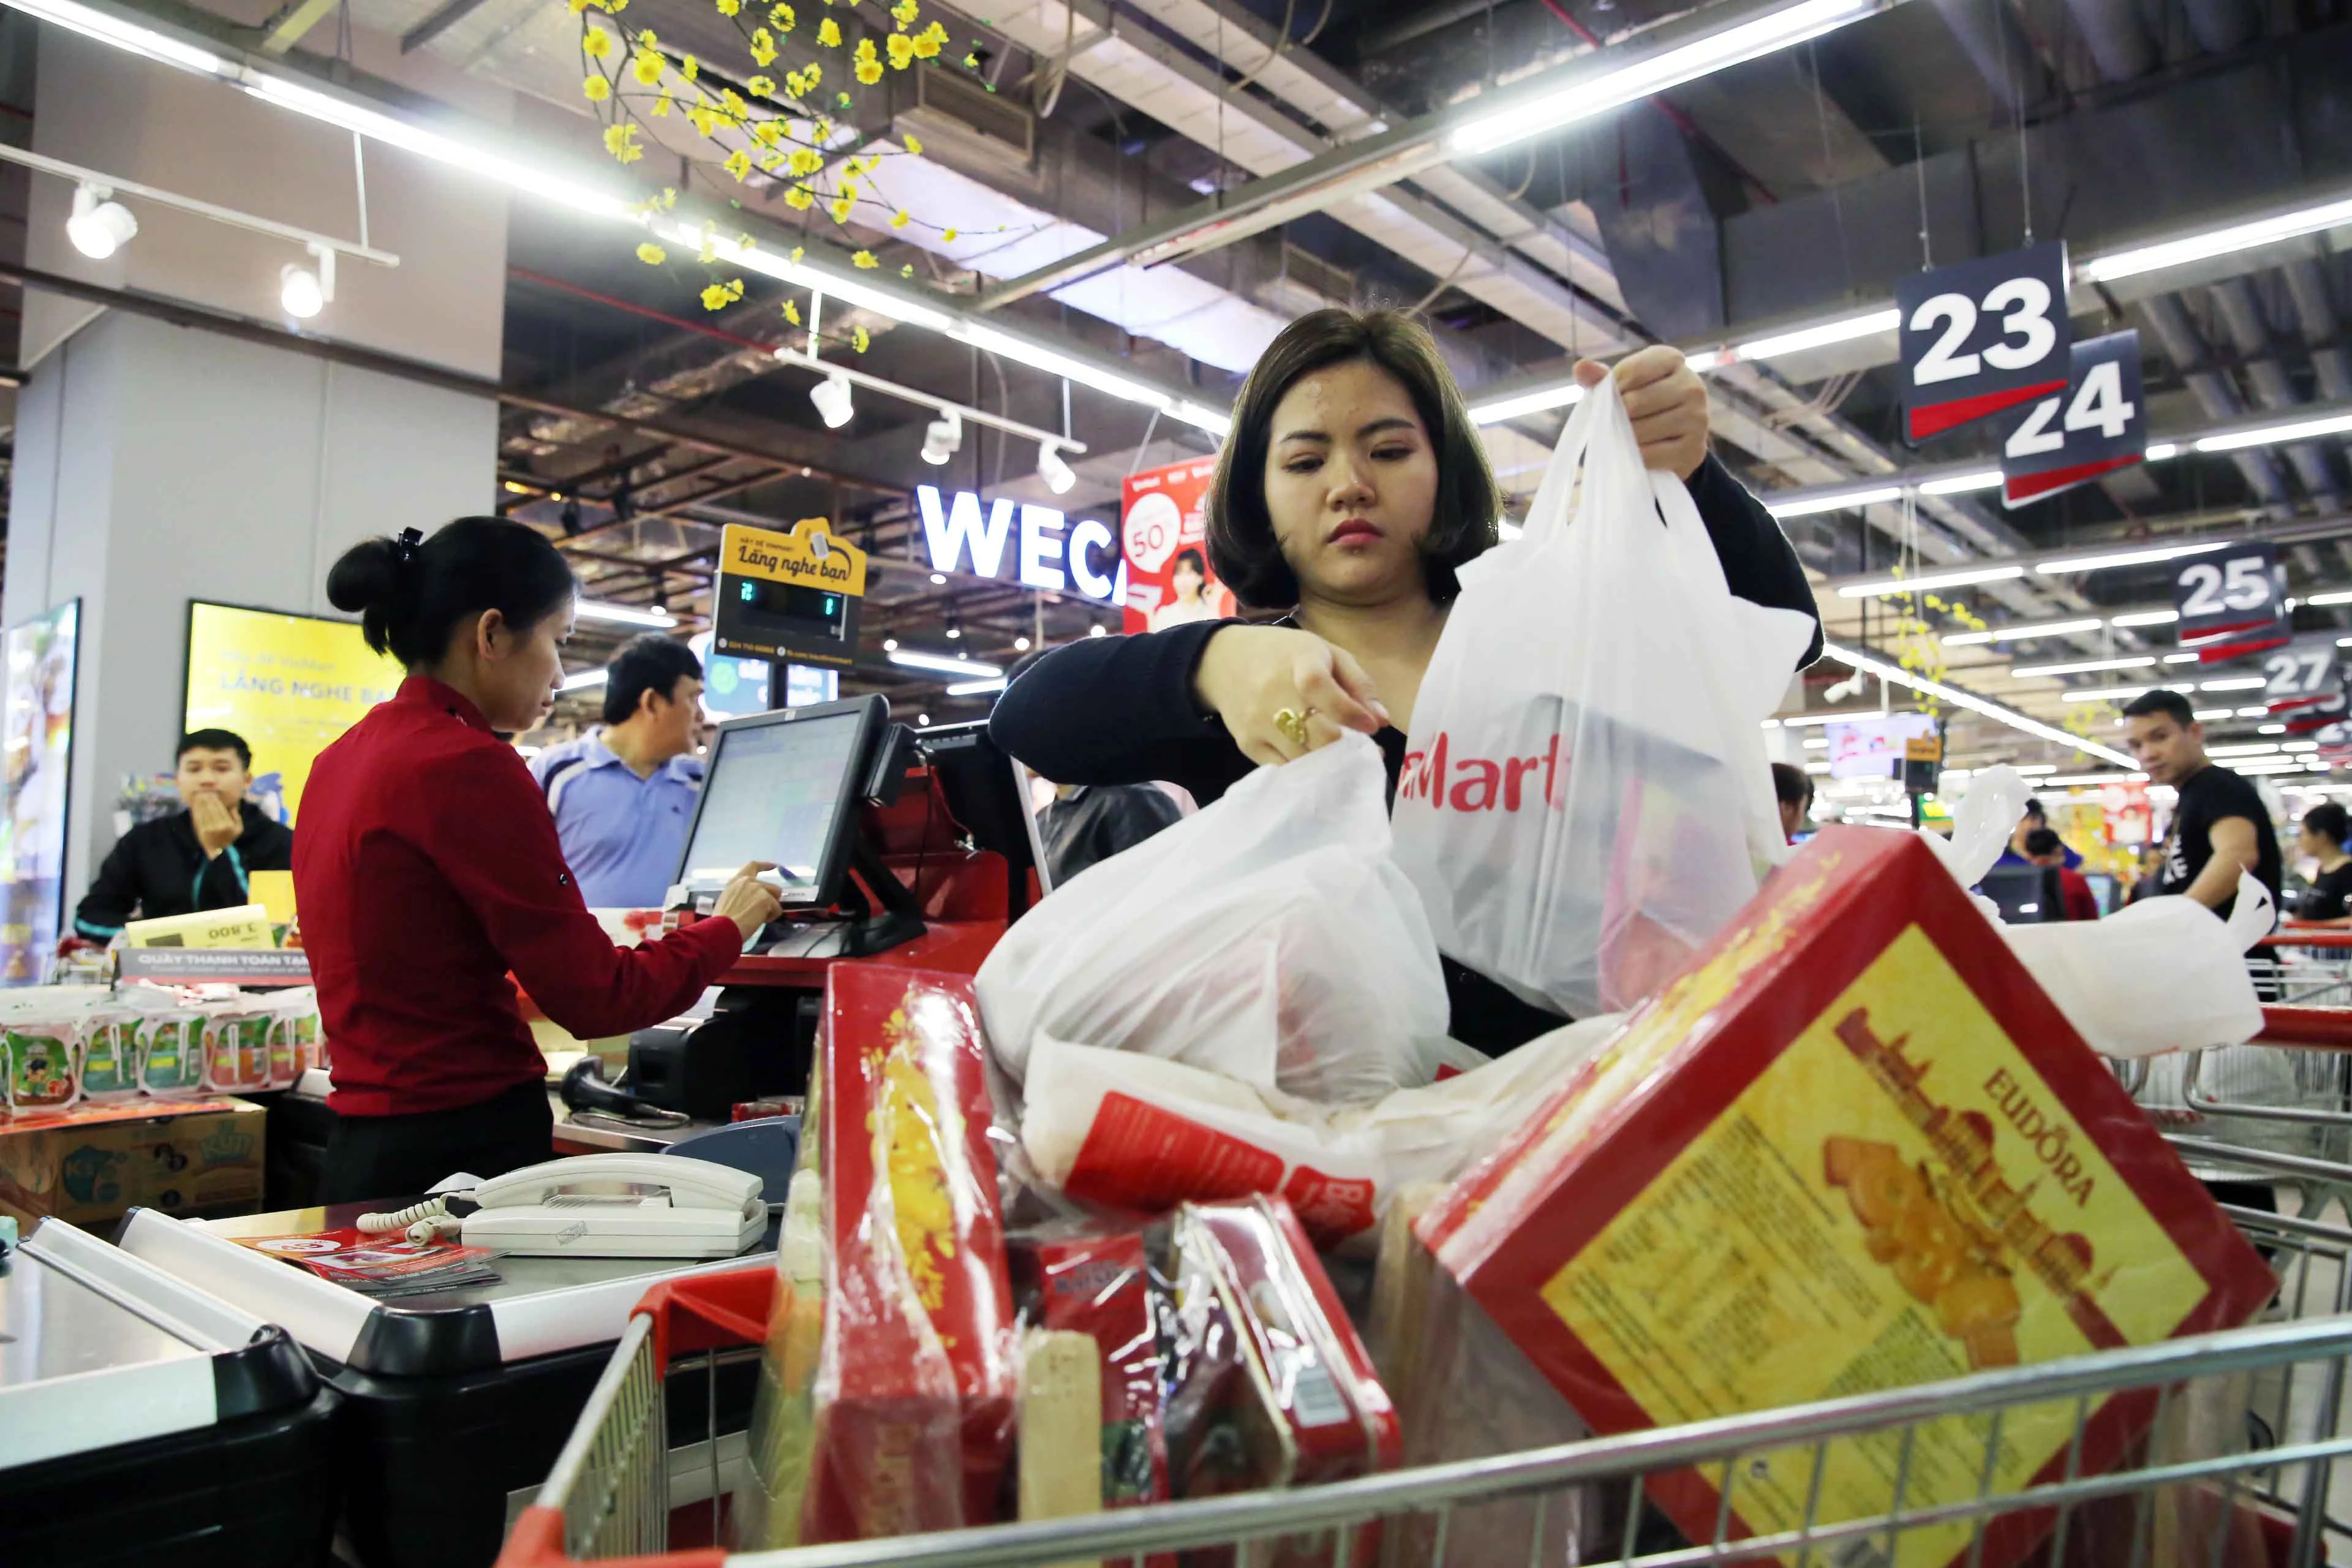 Chỉ còn 1 ngày nữa là đến thời khắc chuyển giao giữa năm mới và năm cũ, thời điểm này, người dân Hà Nội đang cấp tập đi mua sắm Tết. Ảnh chụp một người phụ nữ với xe đẩy hàng đầy ắp tại siêu thị VinMart Times City (Hà Nội).